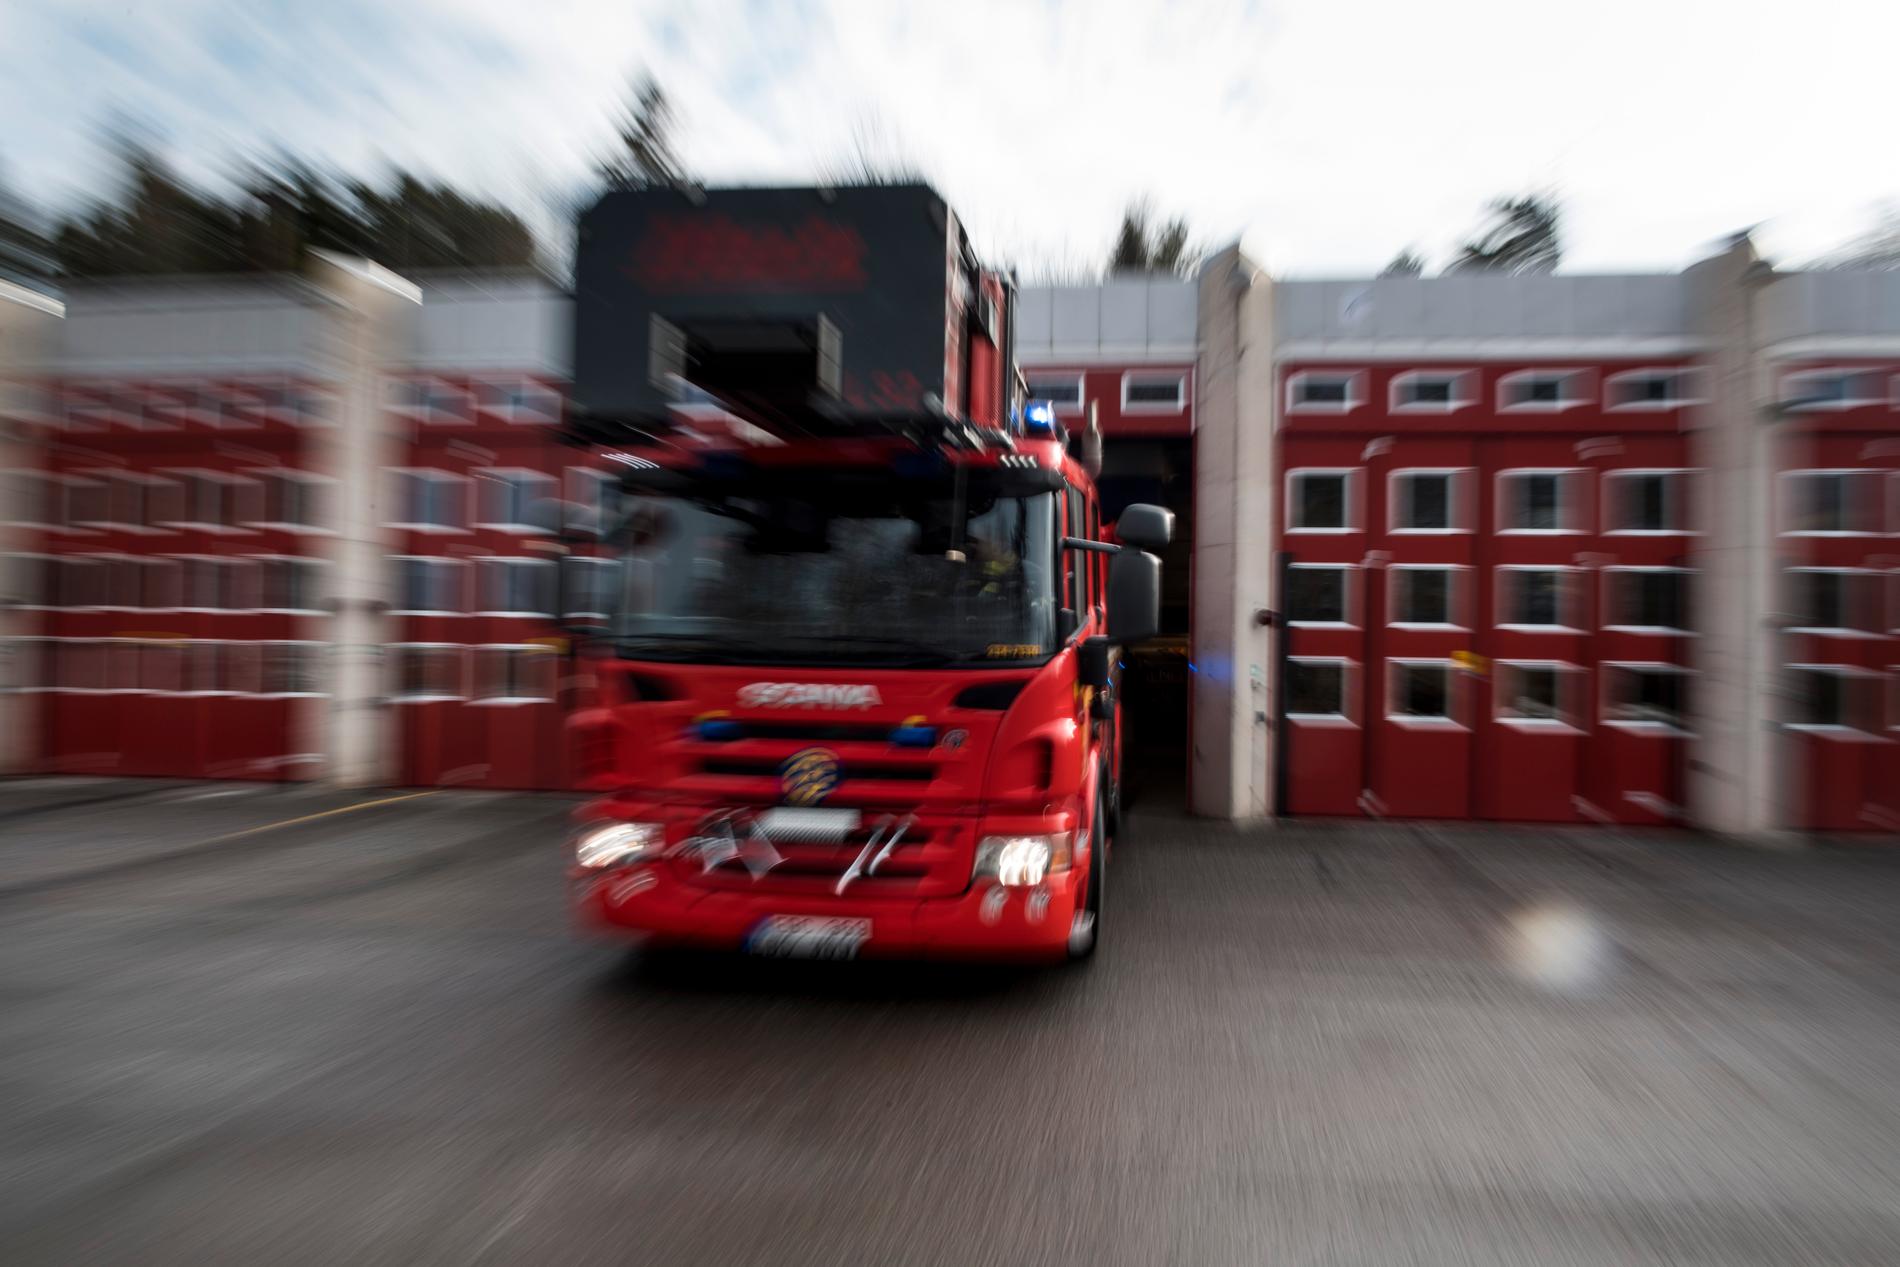 En person omkom till följd av en brand i Sösdala i Skåne. Arkivbild.